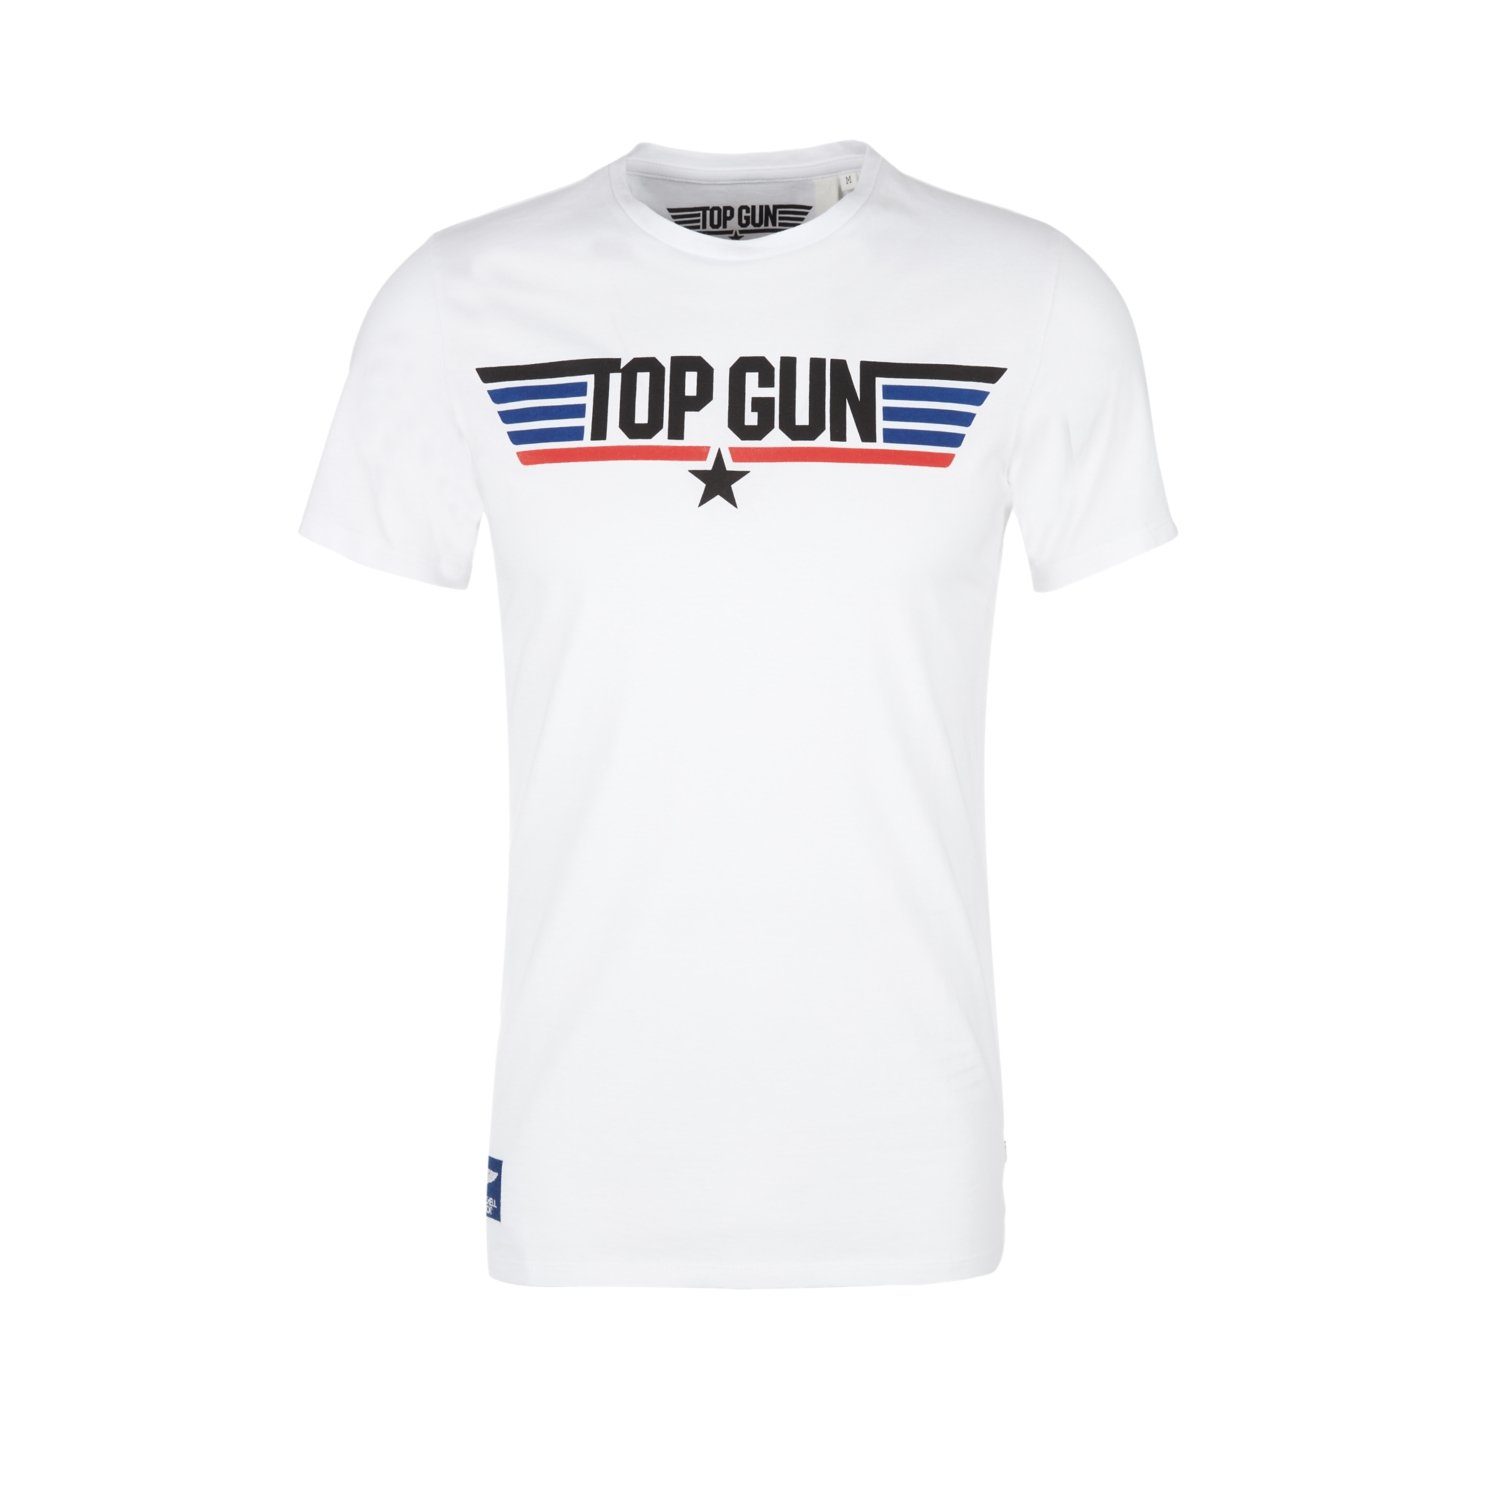 s.Oliver T-Shirt (1-tlg) mit Top Gun Print, Maverick, Slim Fit, kurzarm Weiß